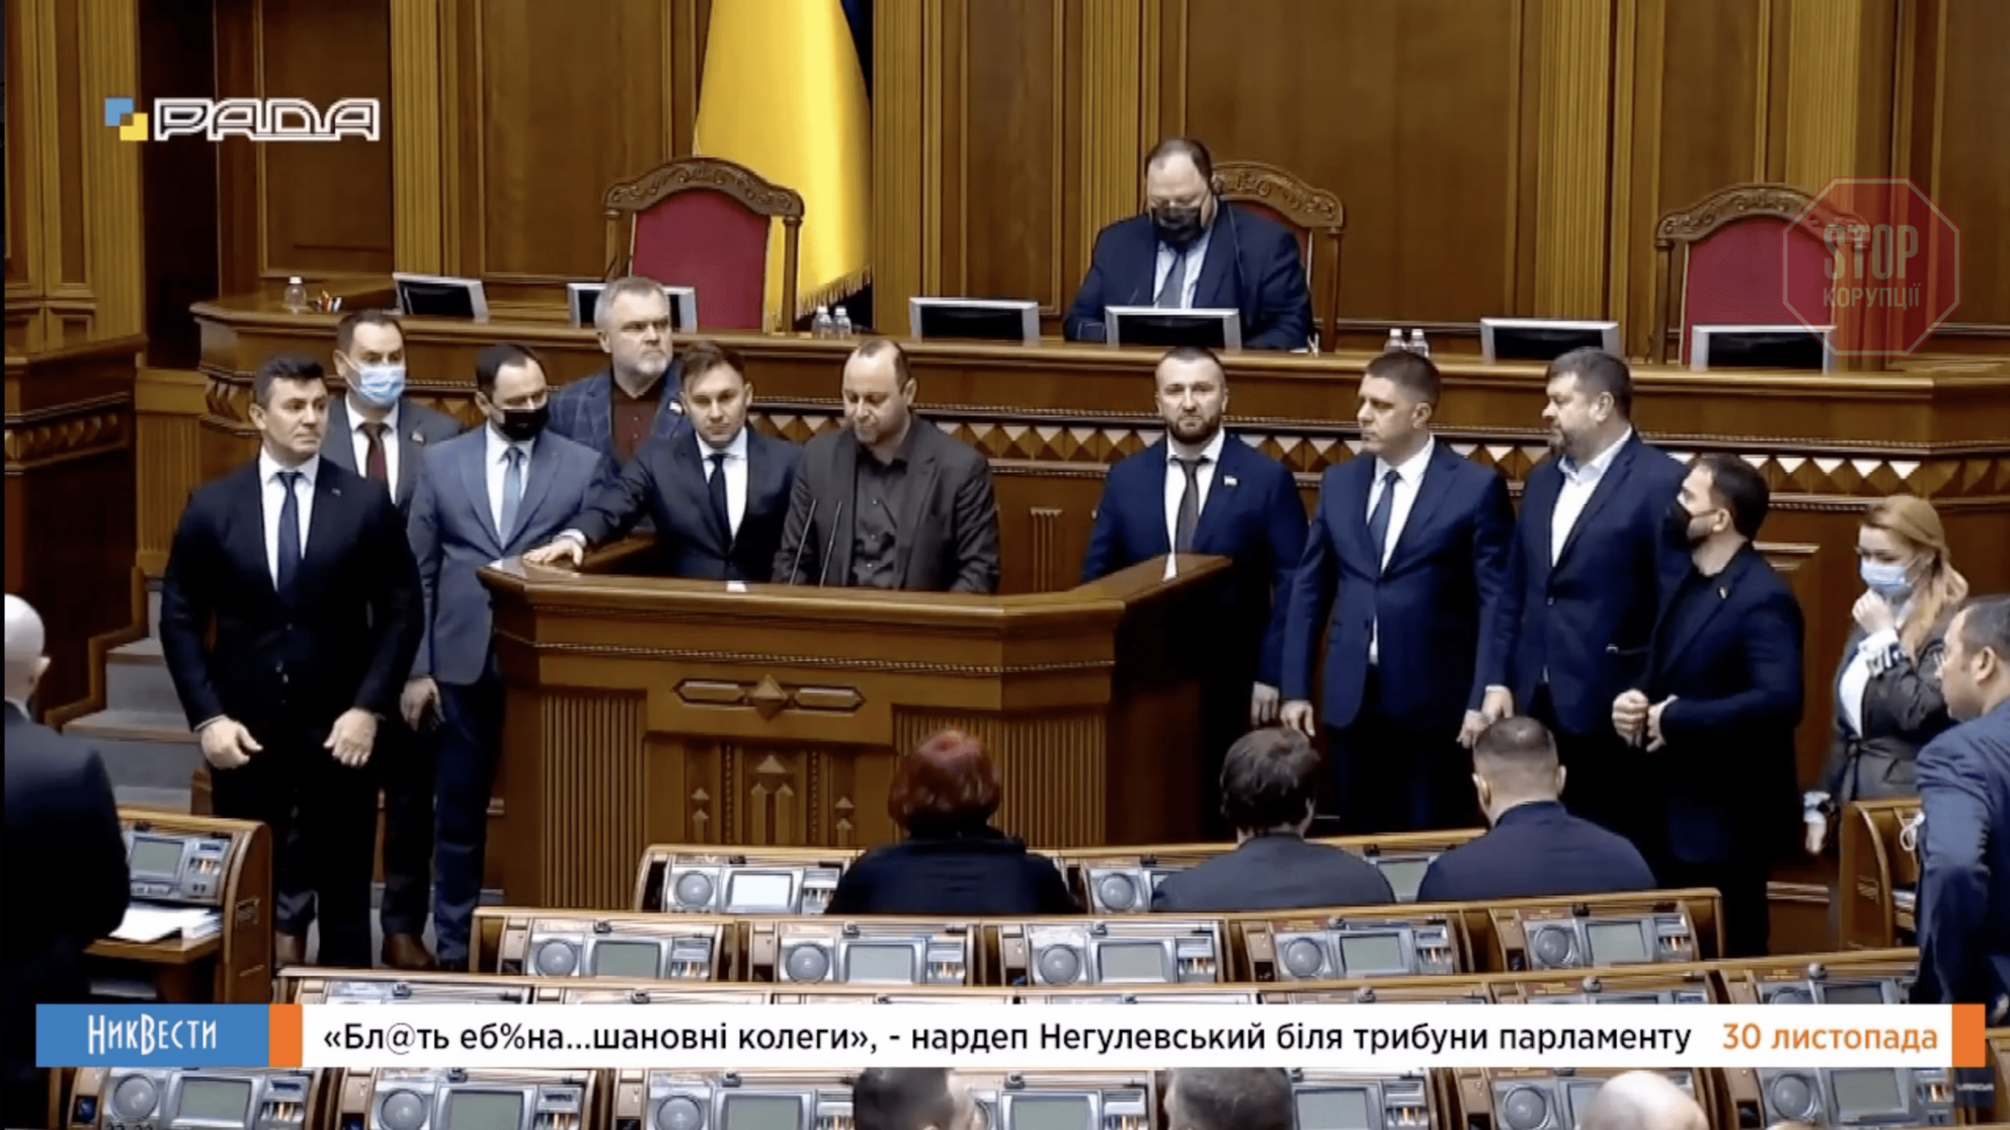 'Слуга' Негулевський нецензурно вилаявся на трибуні Ради: 'Бл@ть еб^на, шановні колеги' (відео)